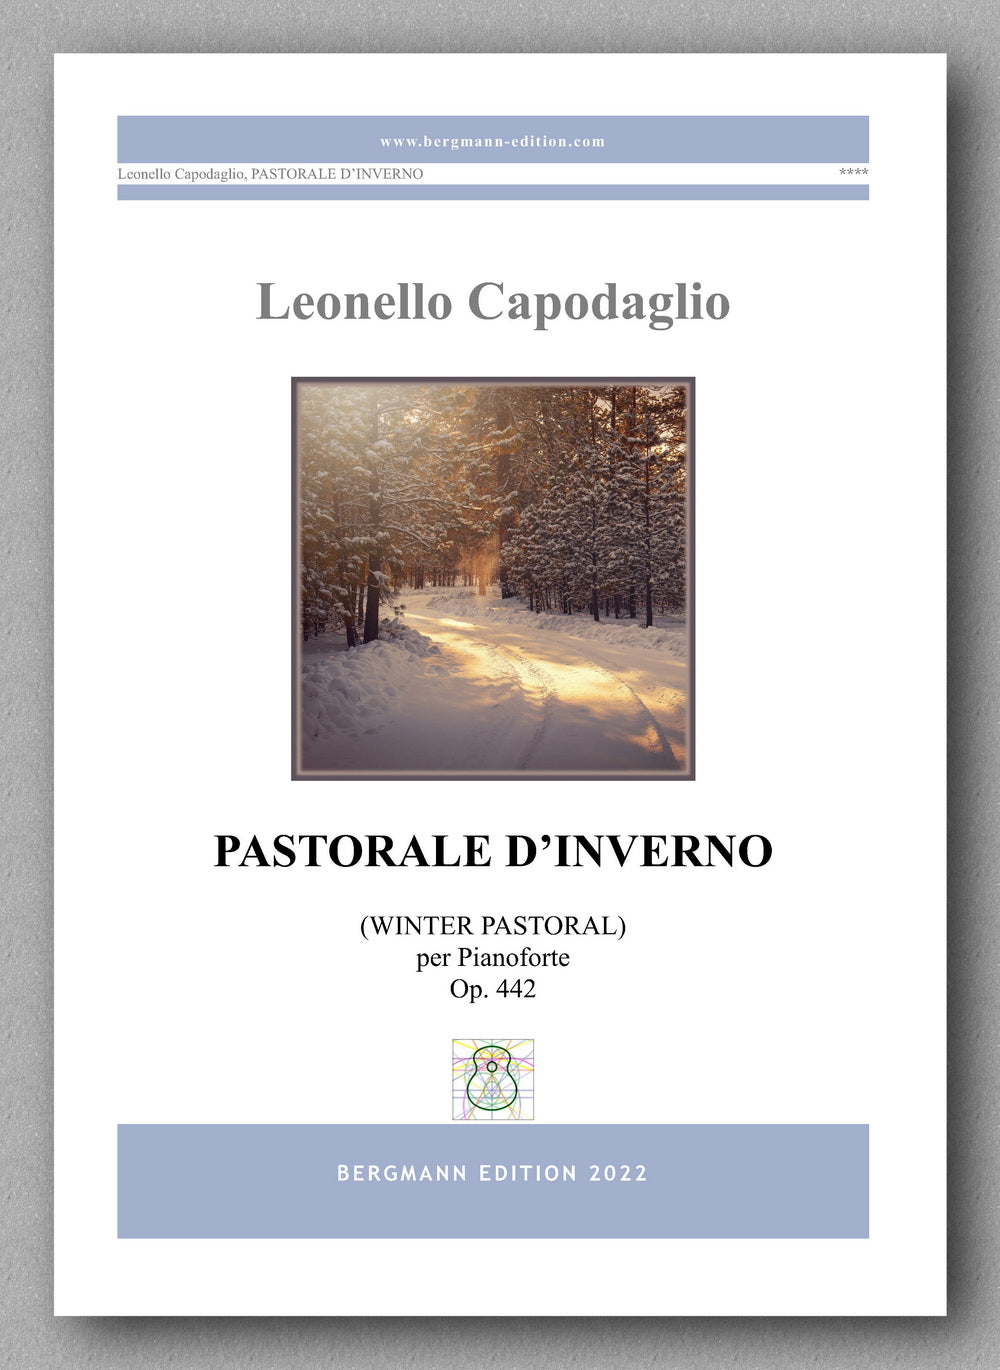 PASTORALE D’INVERNO, op. 442 by  Leonello Capodaglio -  preview of the cover